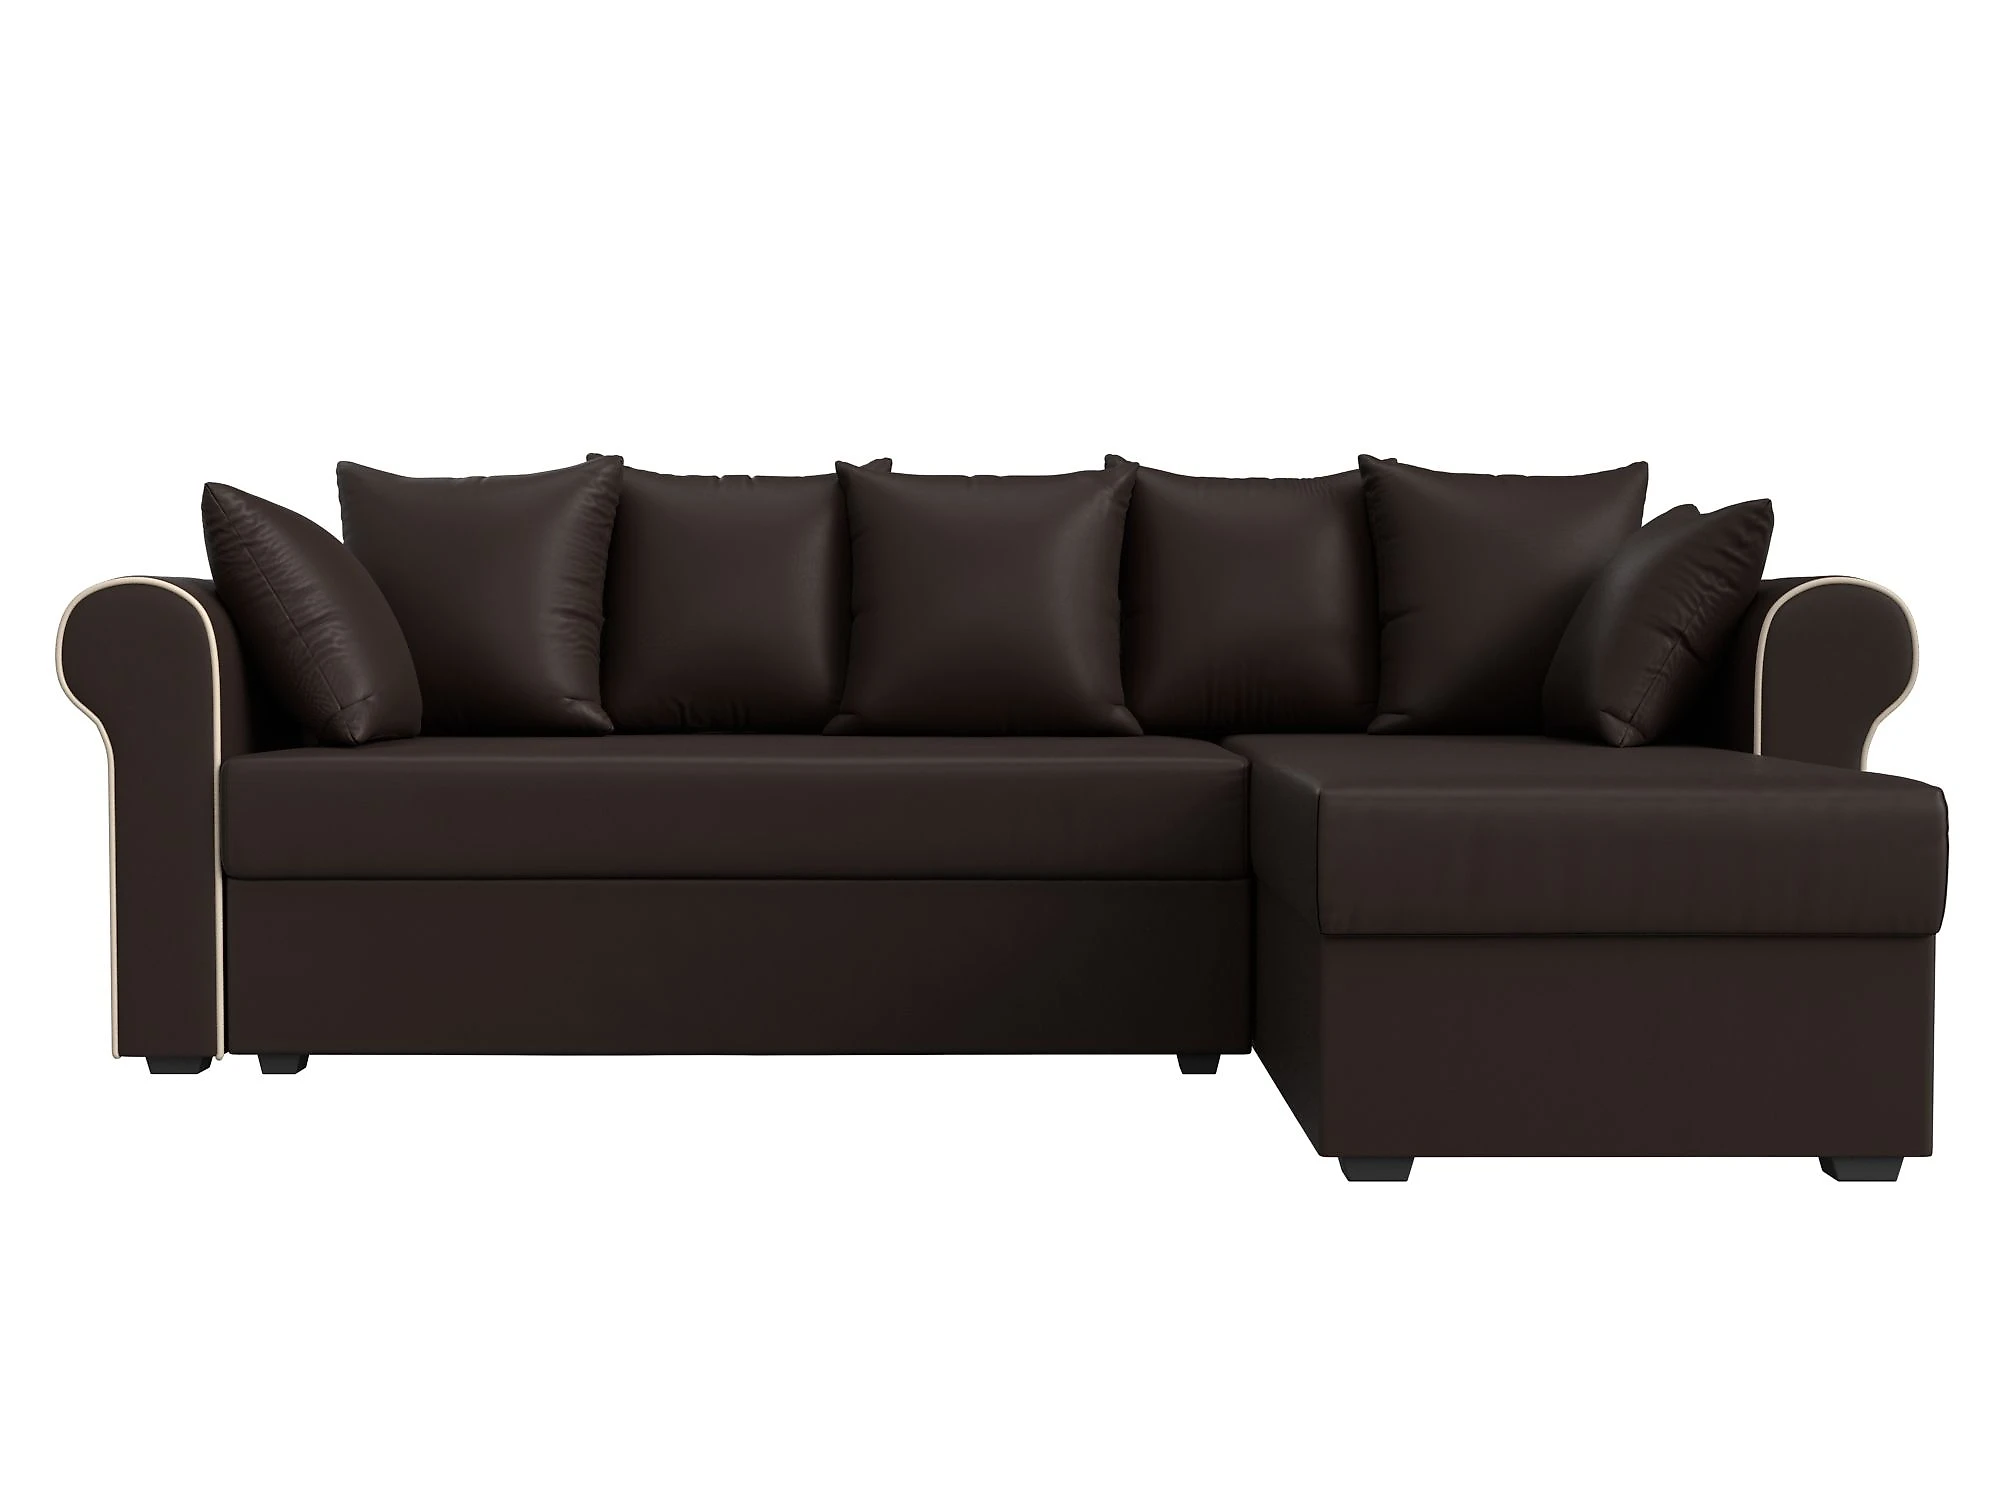  кожаный диван еврокнижка Рейн Дизайн 14